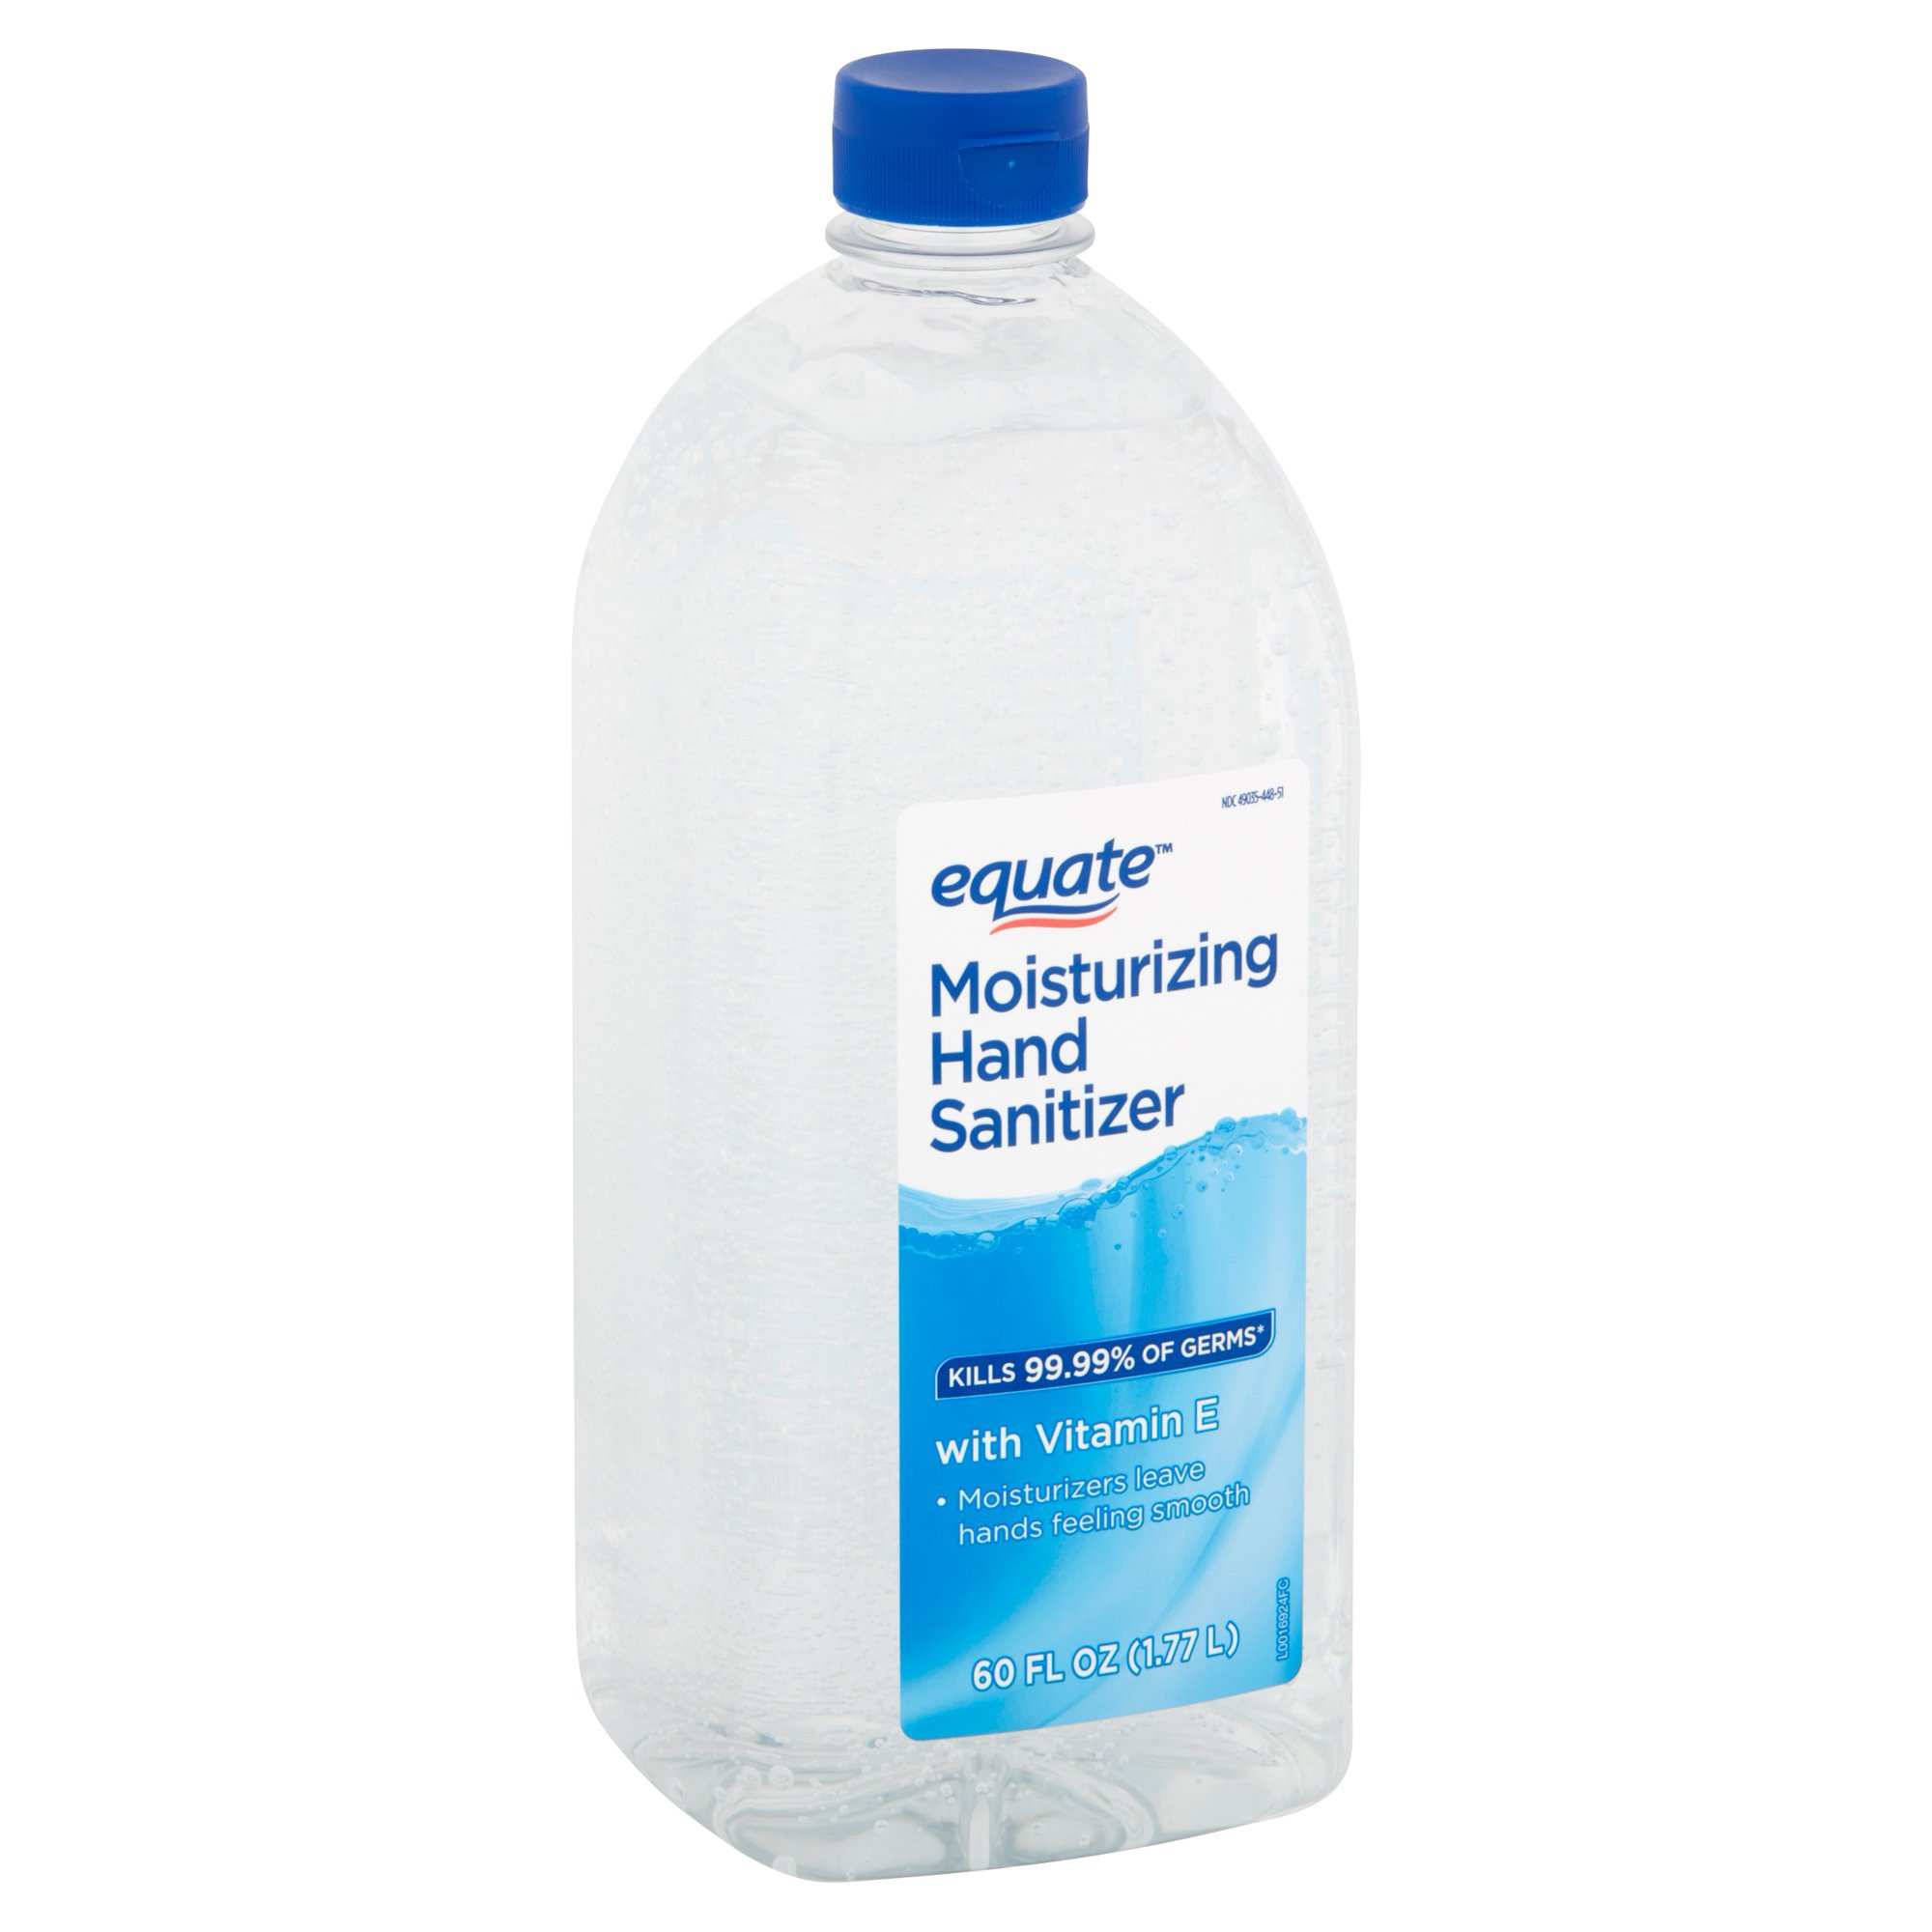 Equate Moisturizing Hand Sanitizer, 60 fl oz - Walmart.com - Walmart.com免洗洗手液